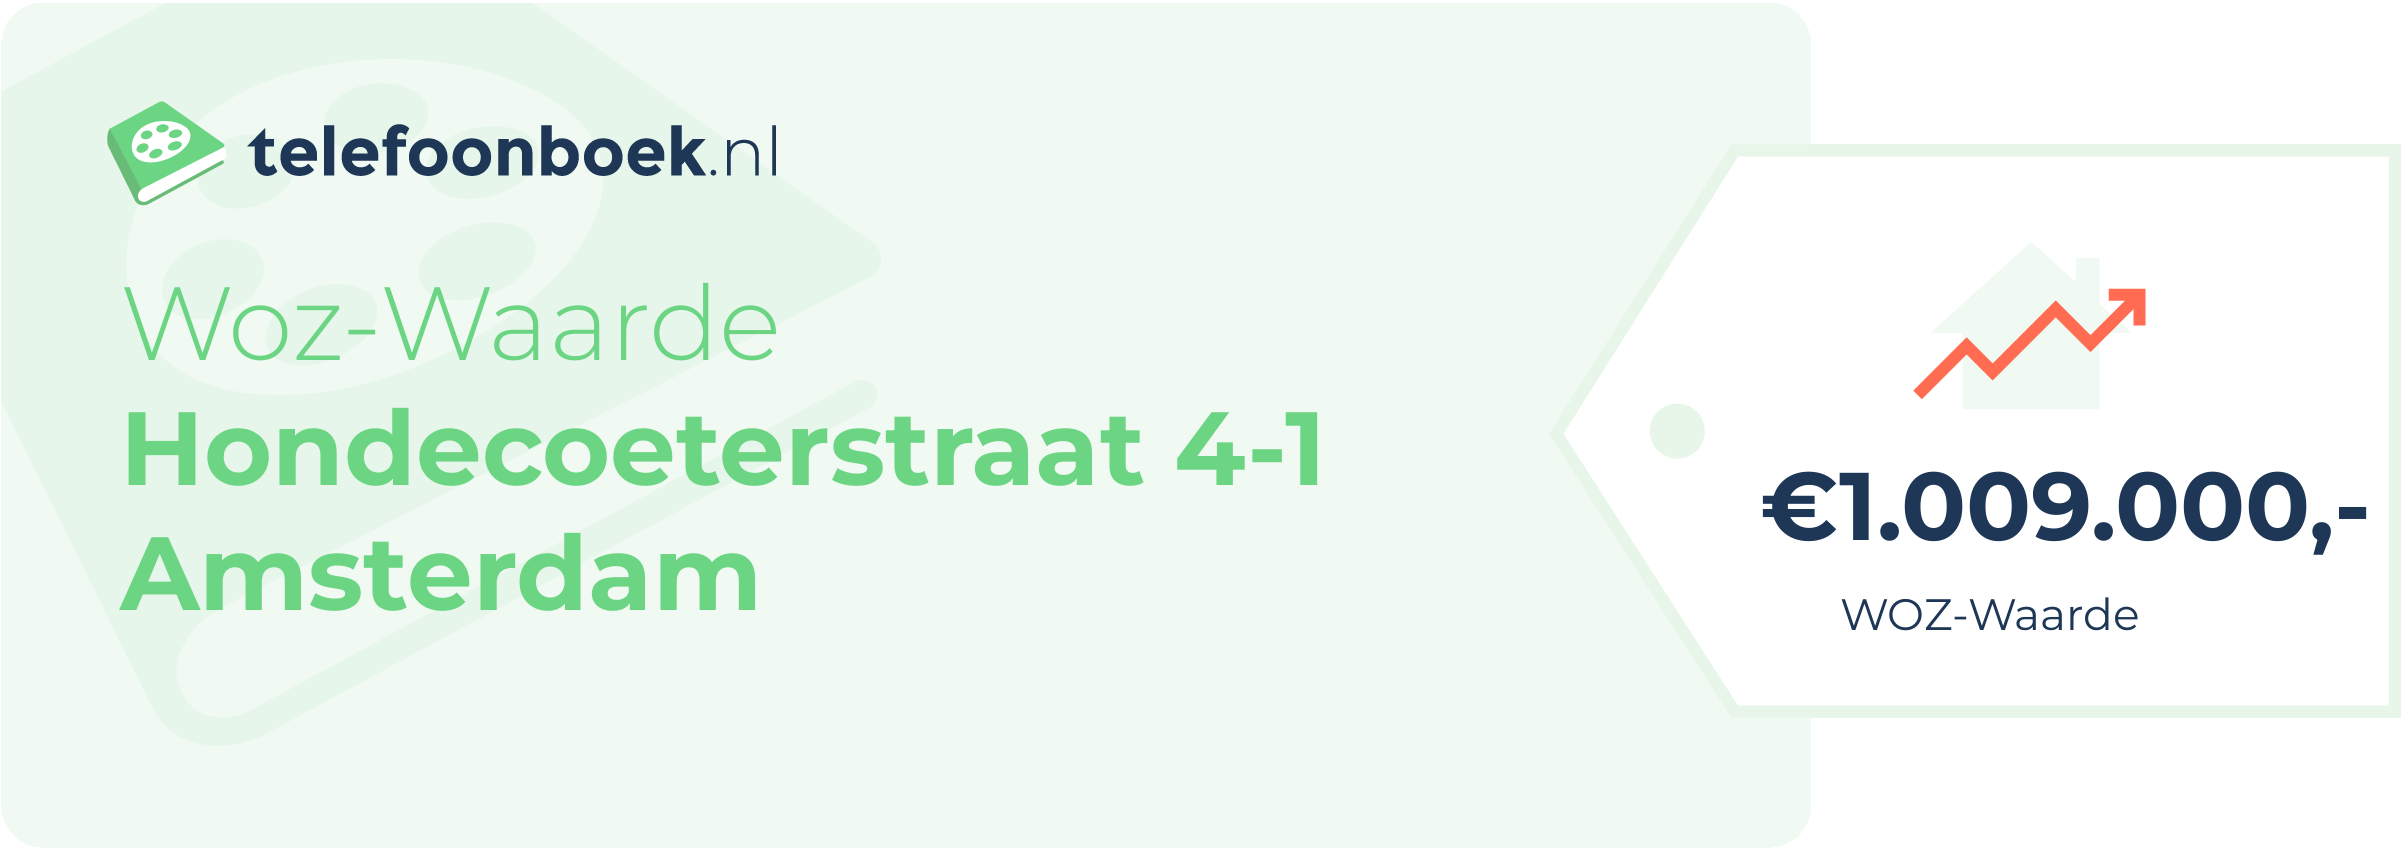 WOZ-waarde Hondecoeterstraat 4-1 Amsterdam